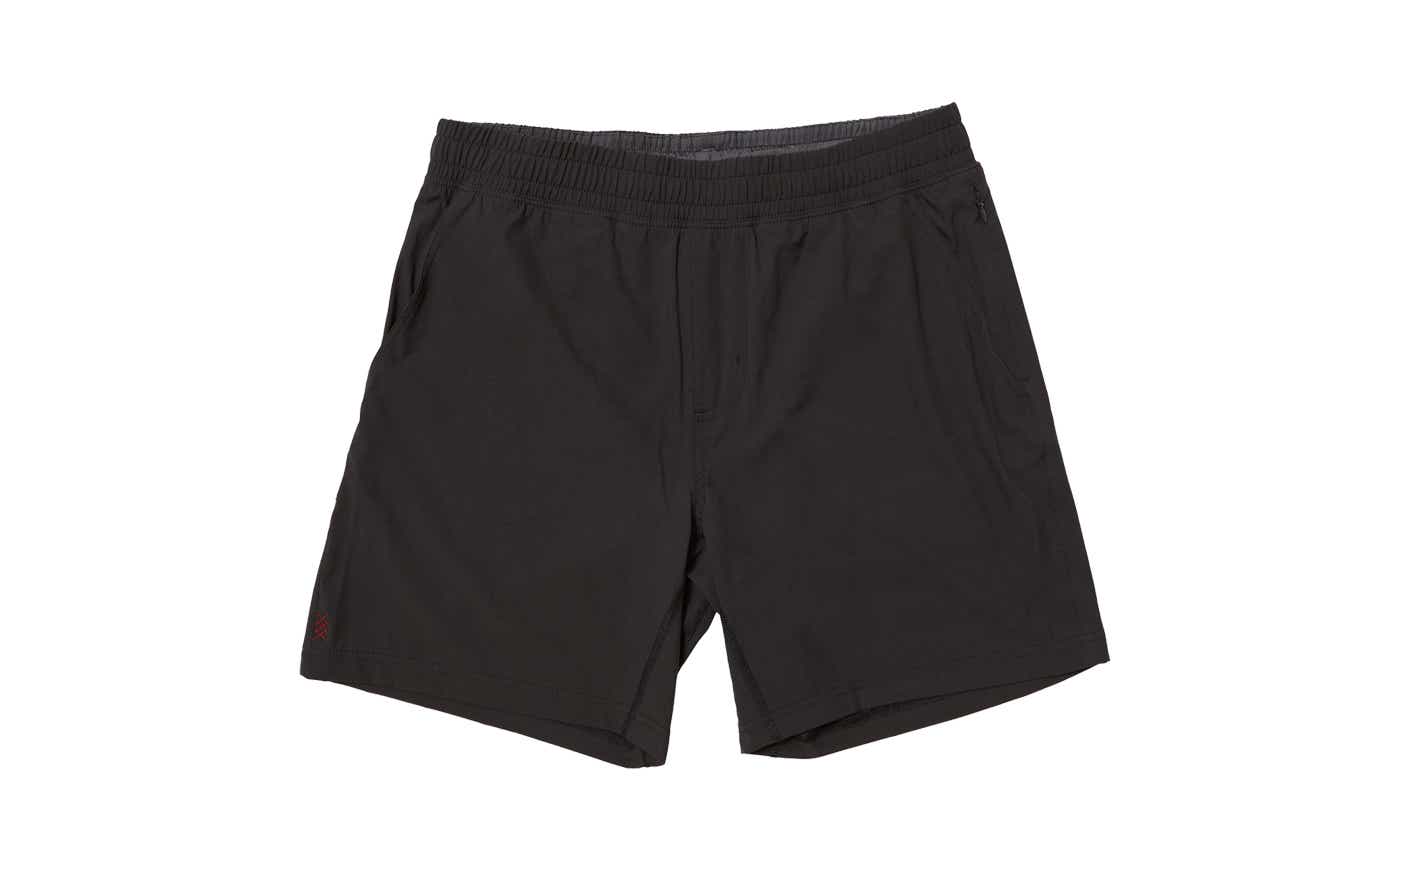 Rhone shorts